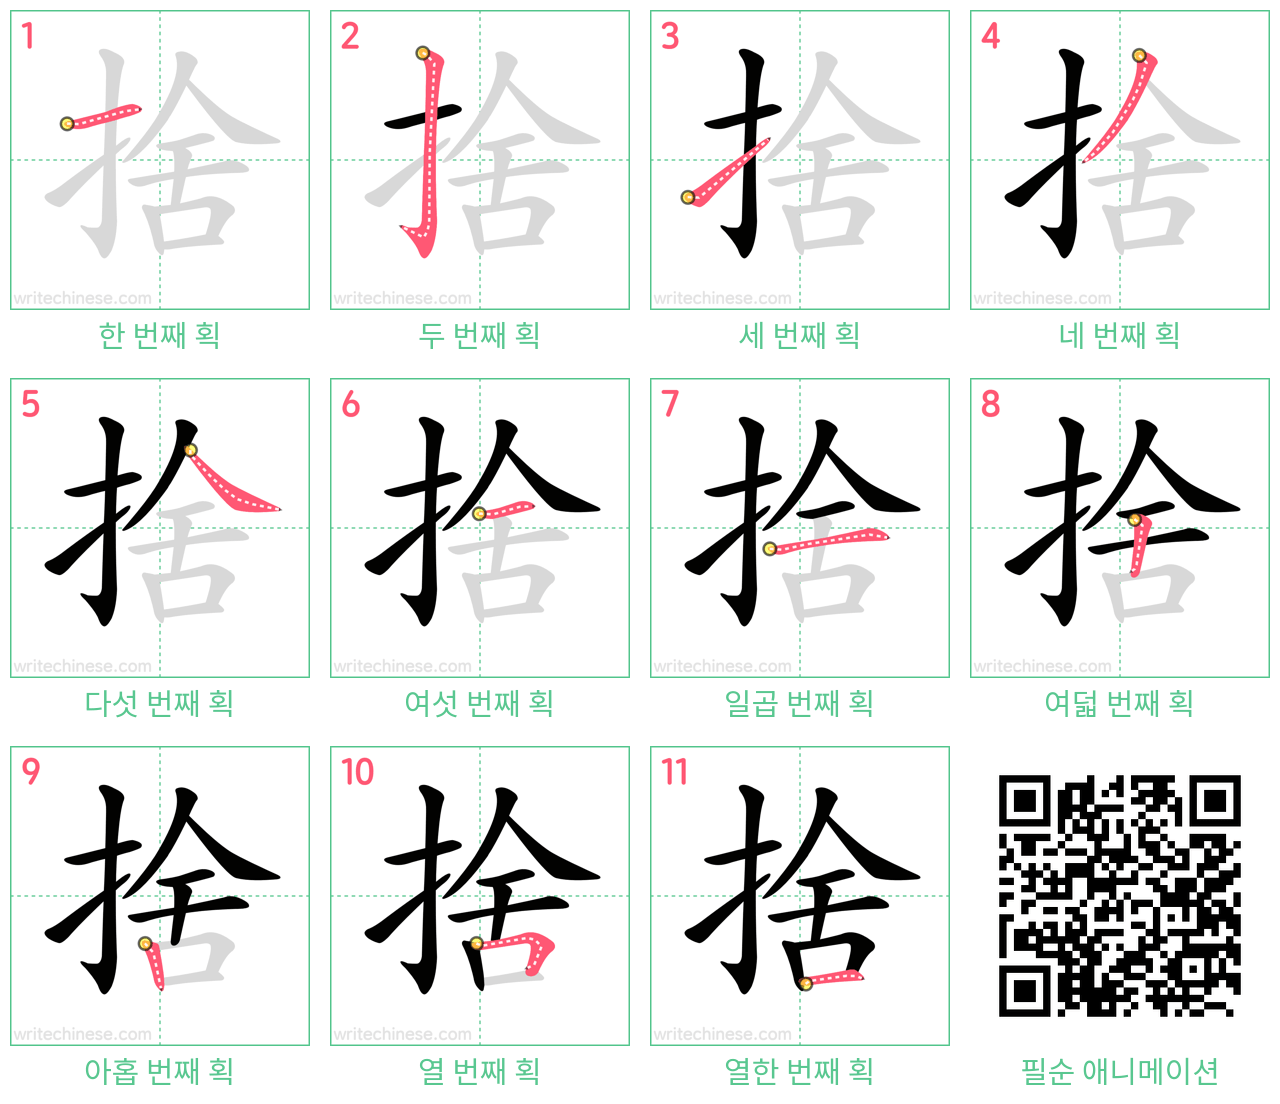 捨 step-by-step stroke order diagrams